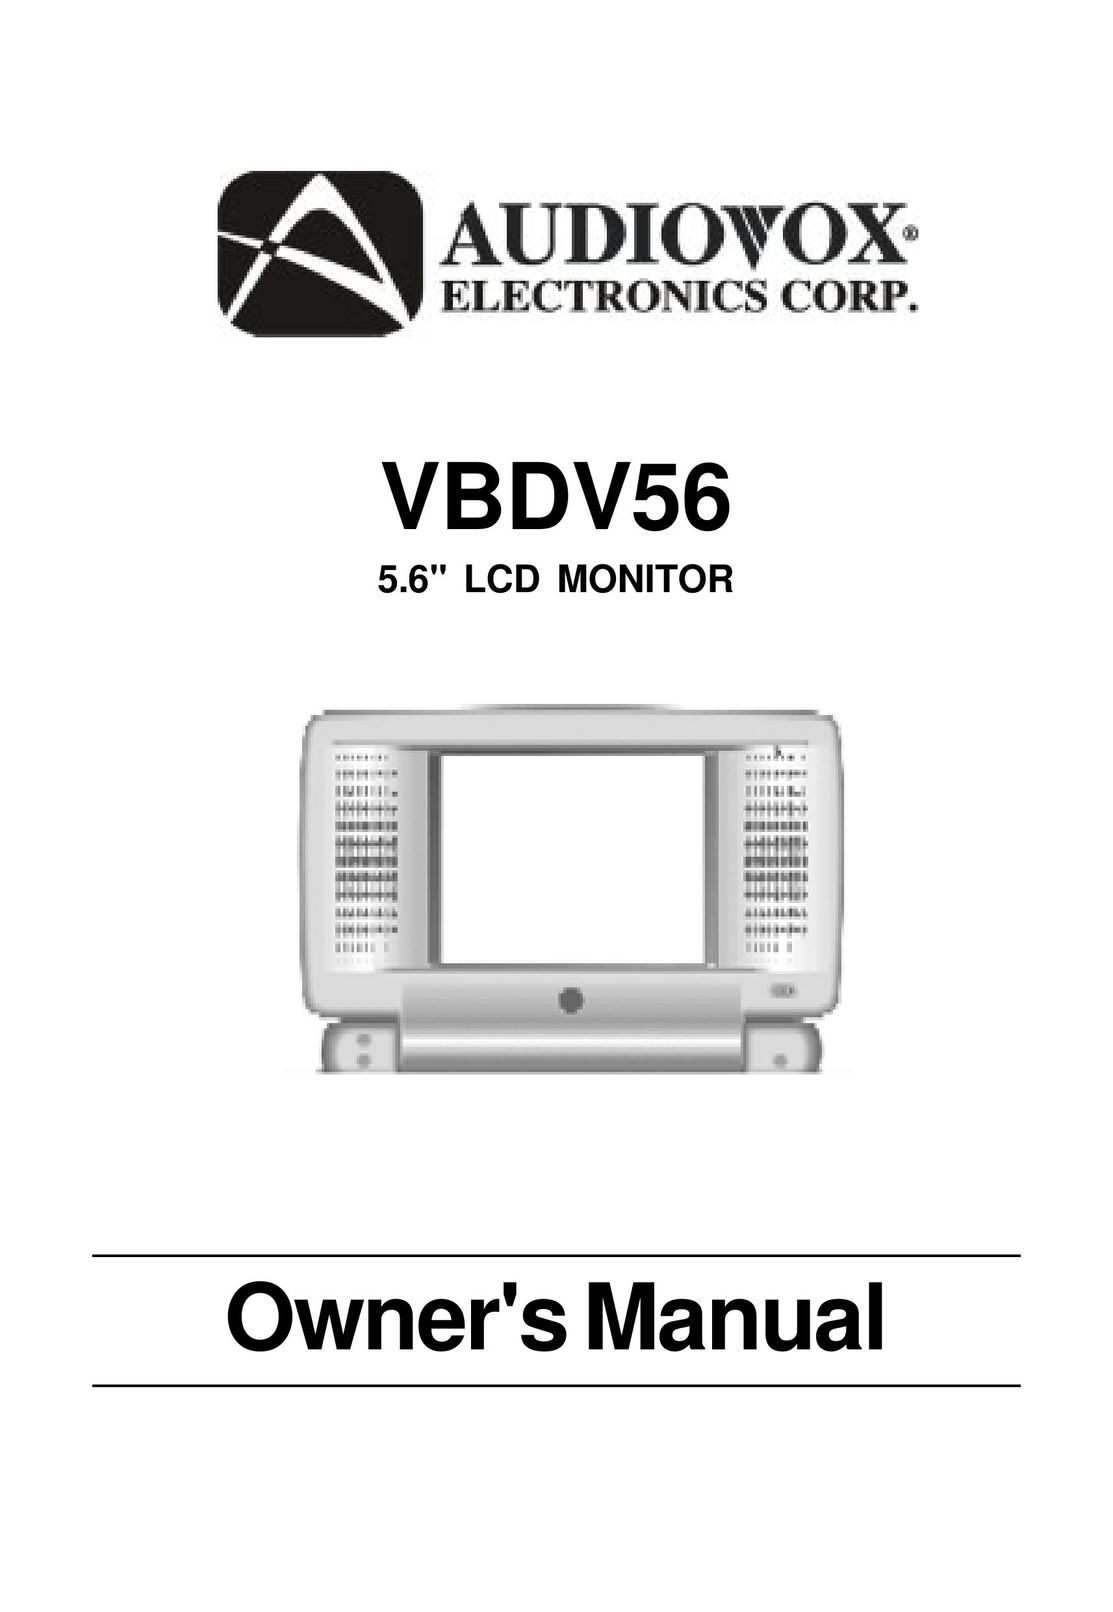 Audiovox VBDV56 Computer Monitor User Manual